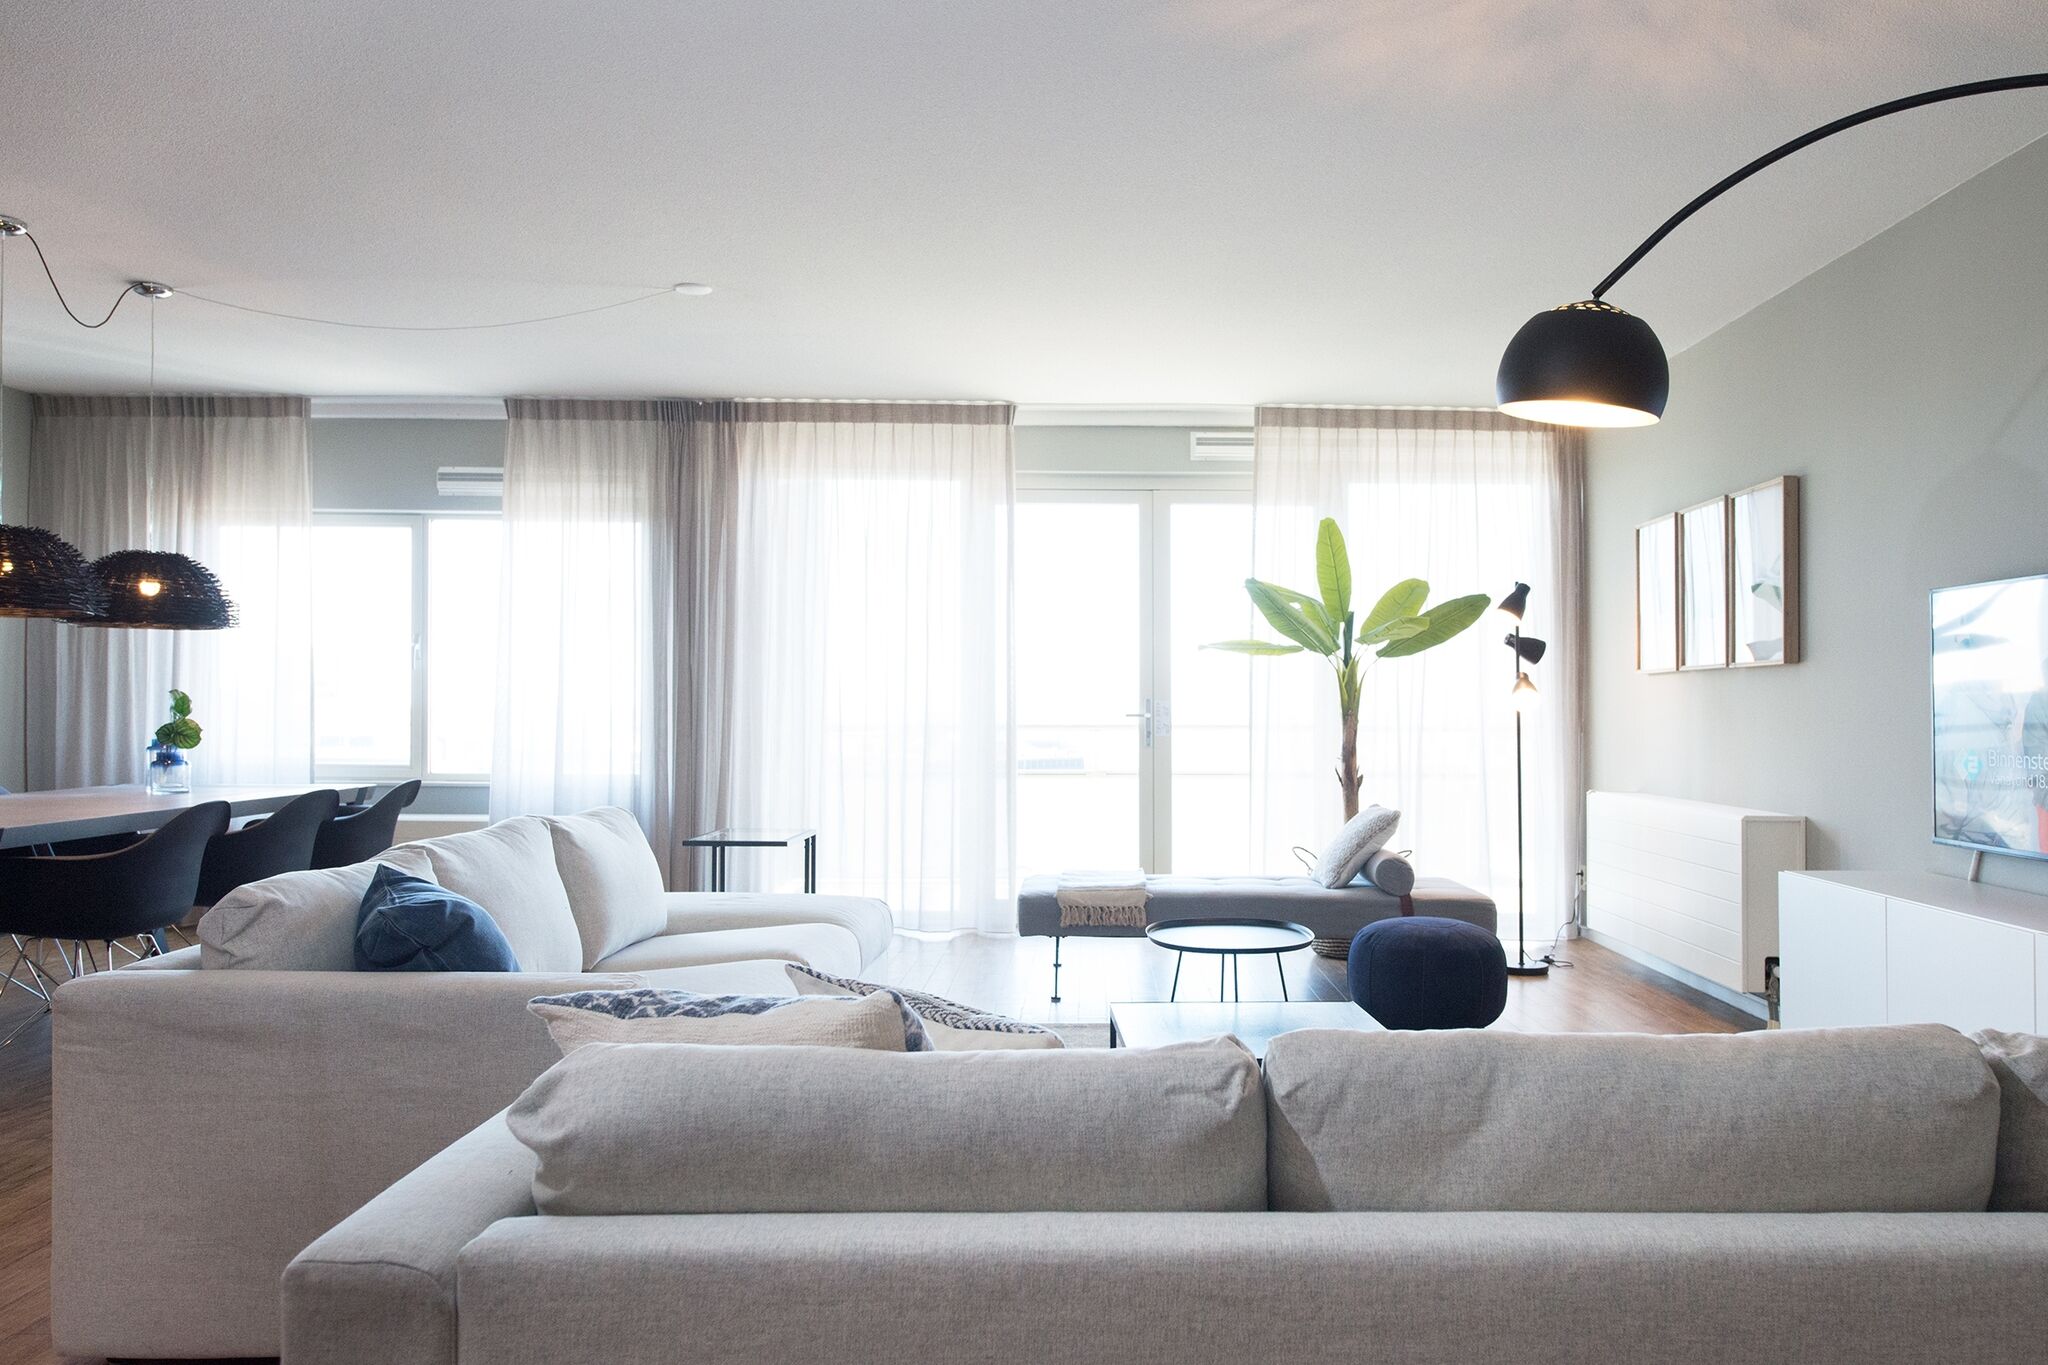 Luxury 3 room apartment in Scheveningen